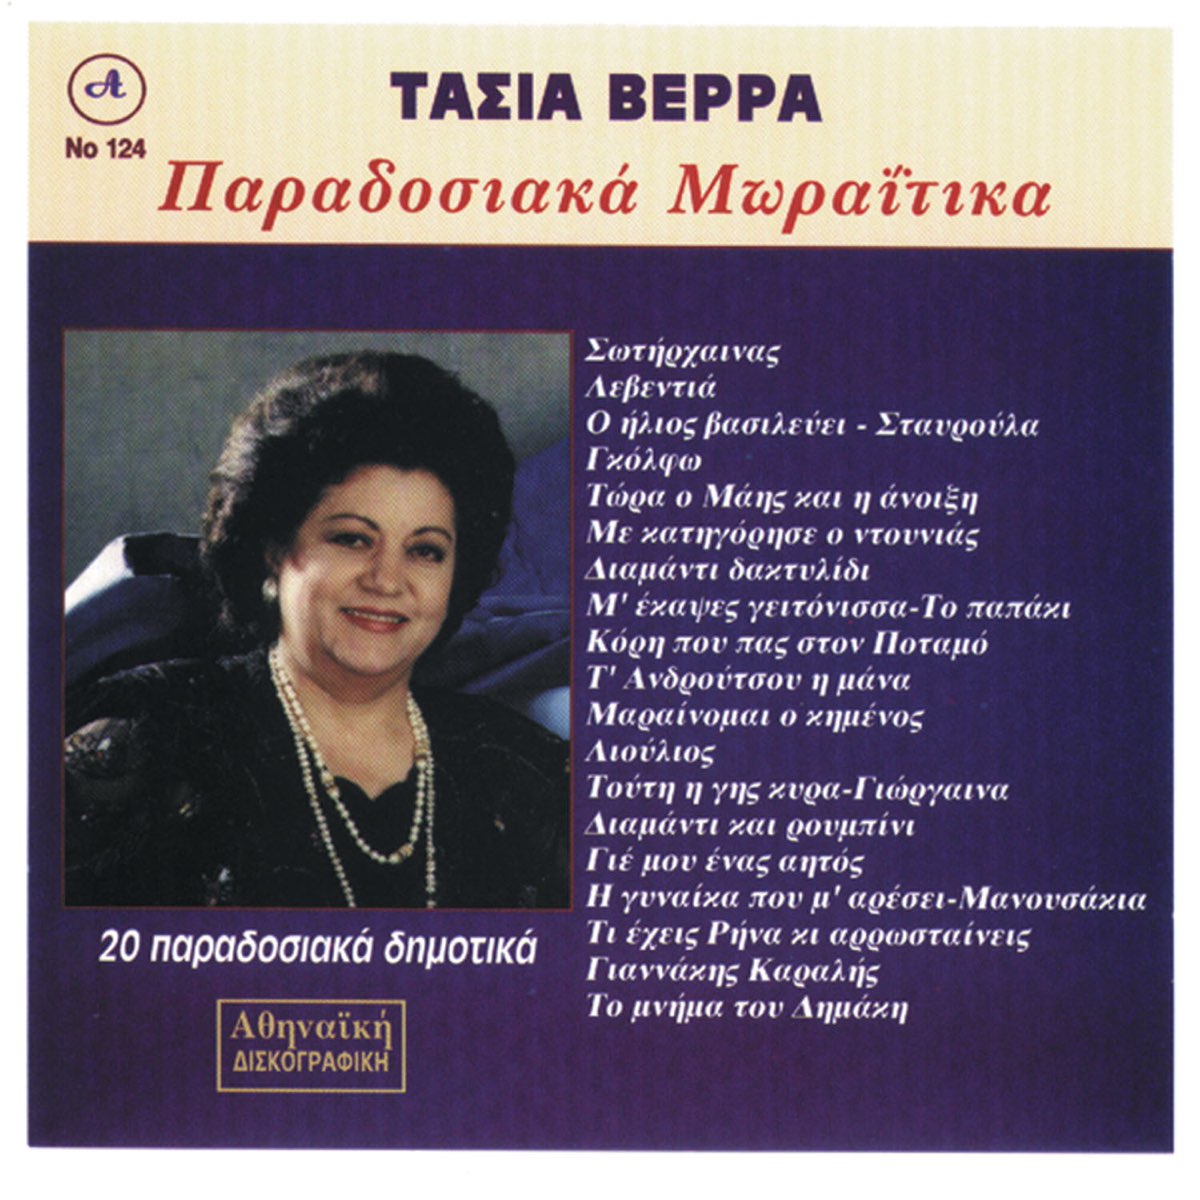 Ta Moraitika Tasia Verra - Album by Tasia Verra - Apple Music